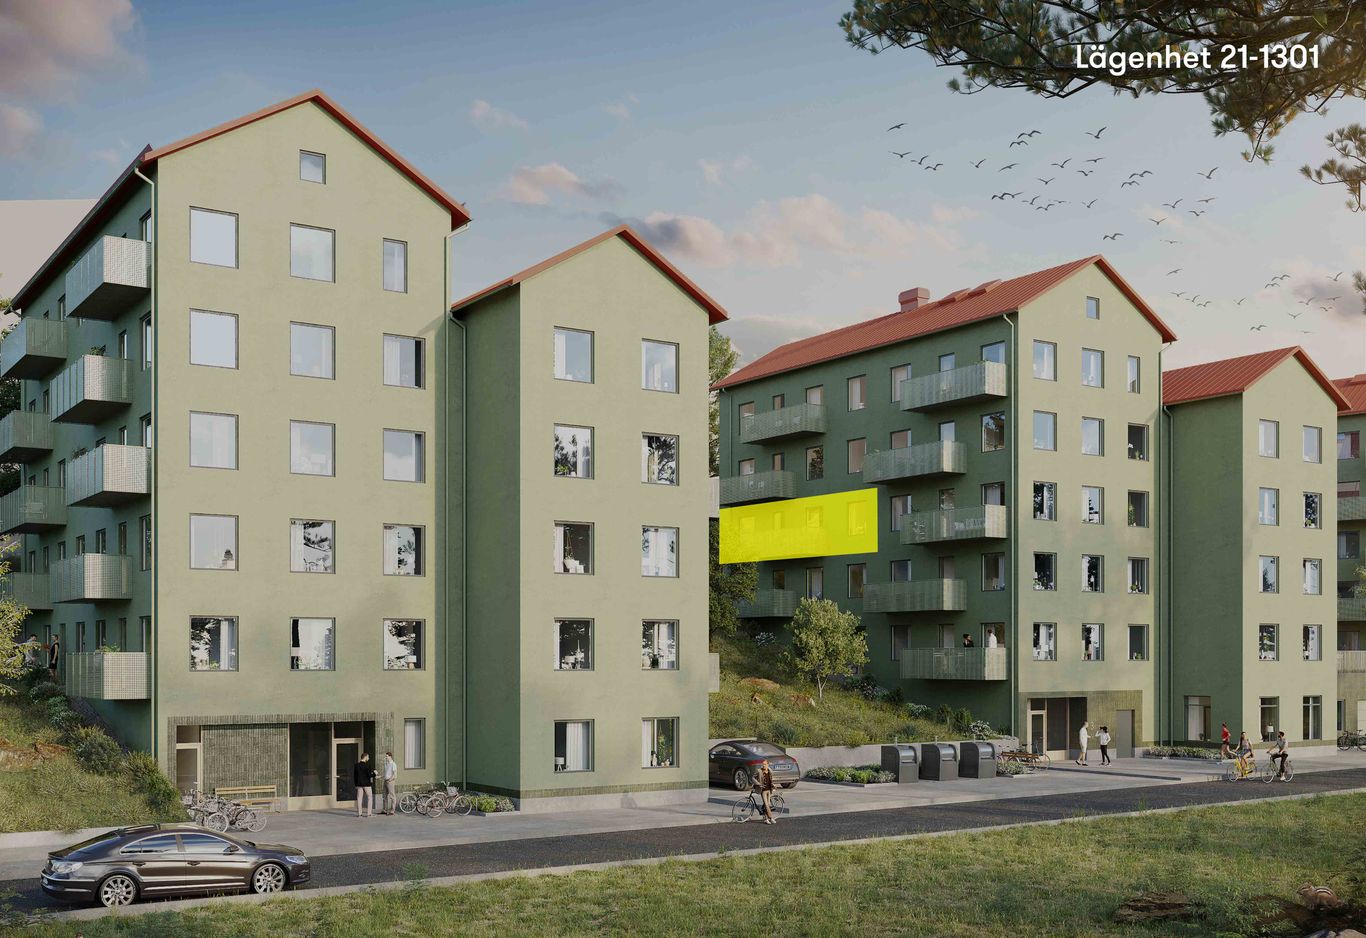 Fasadbild med lägenhet  21-1301 markerat i gult